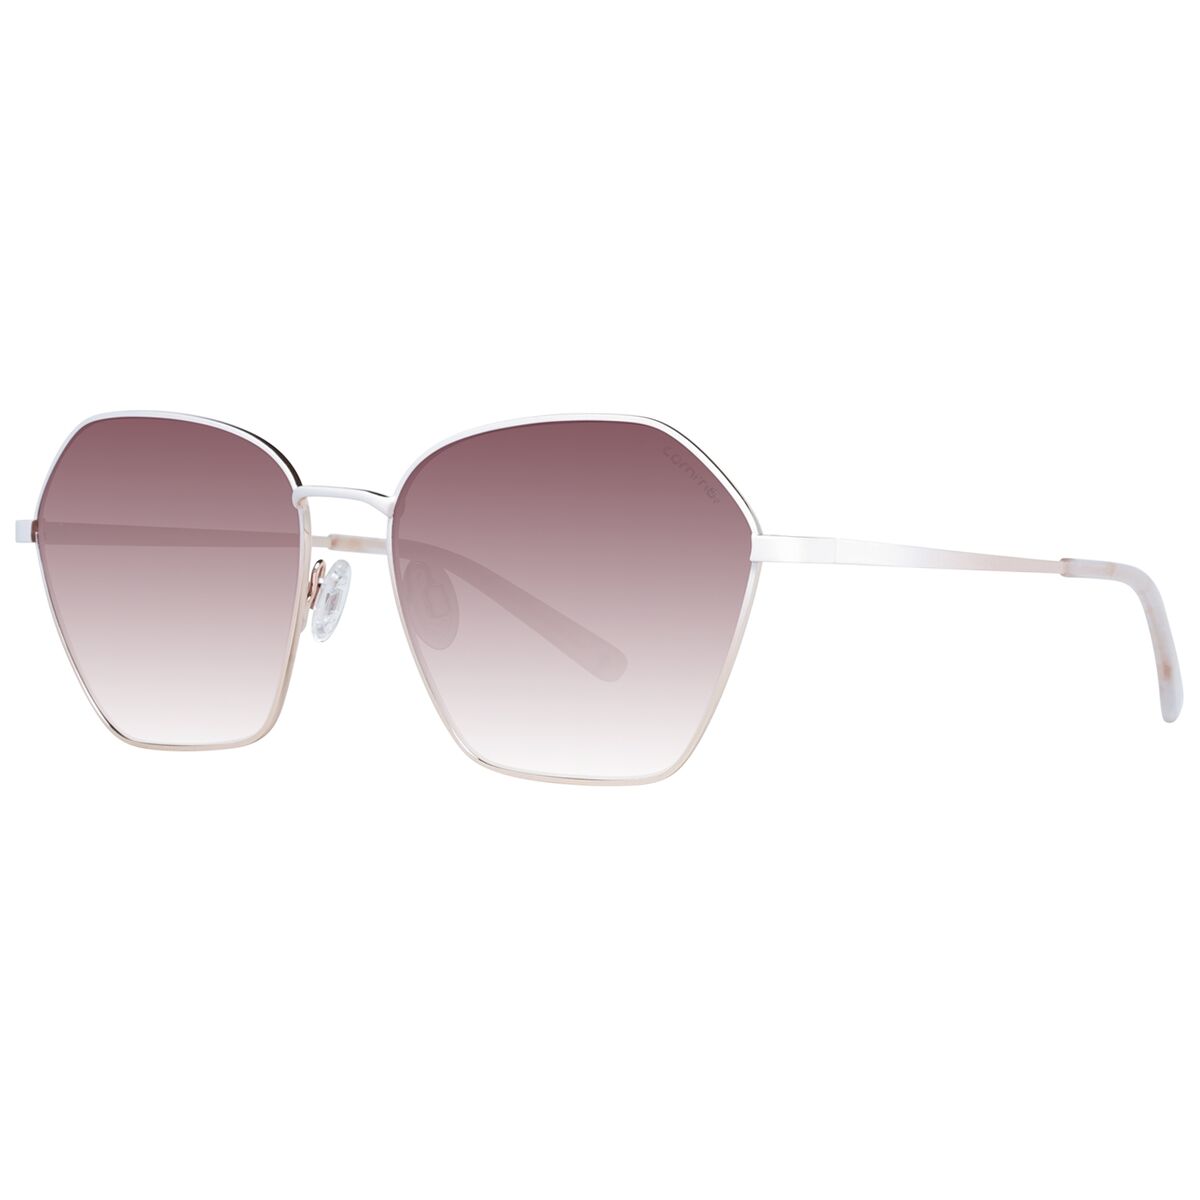 Ladies' Sunglasses Comma 77147 5601